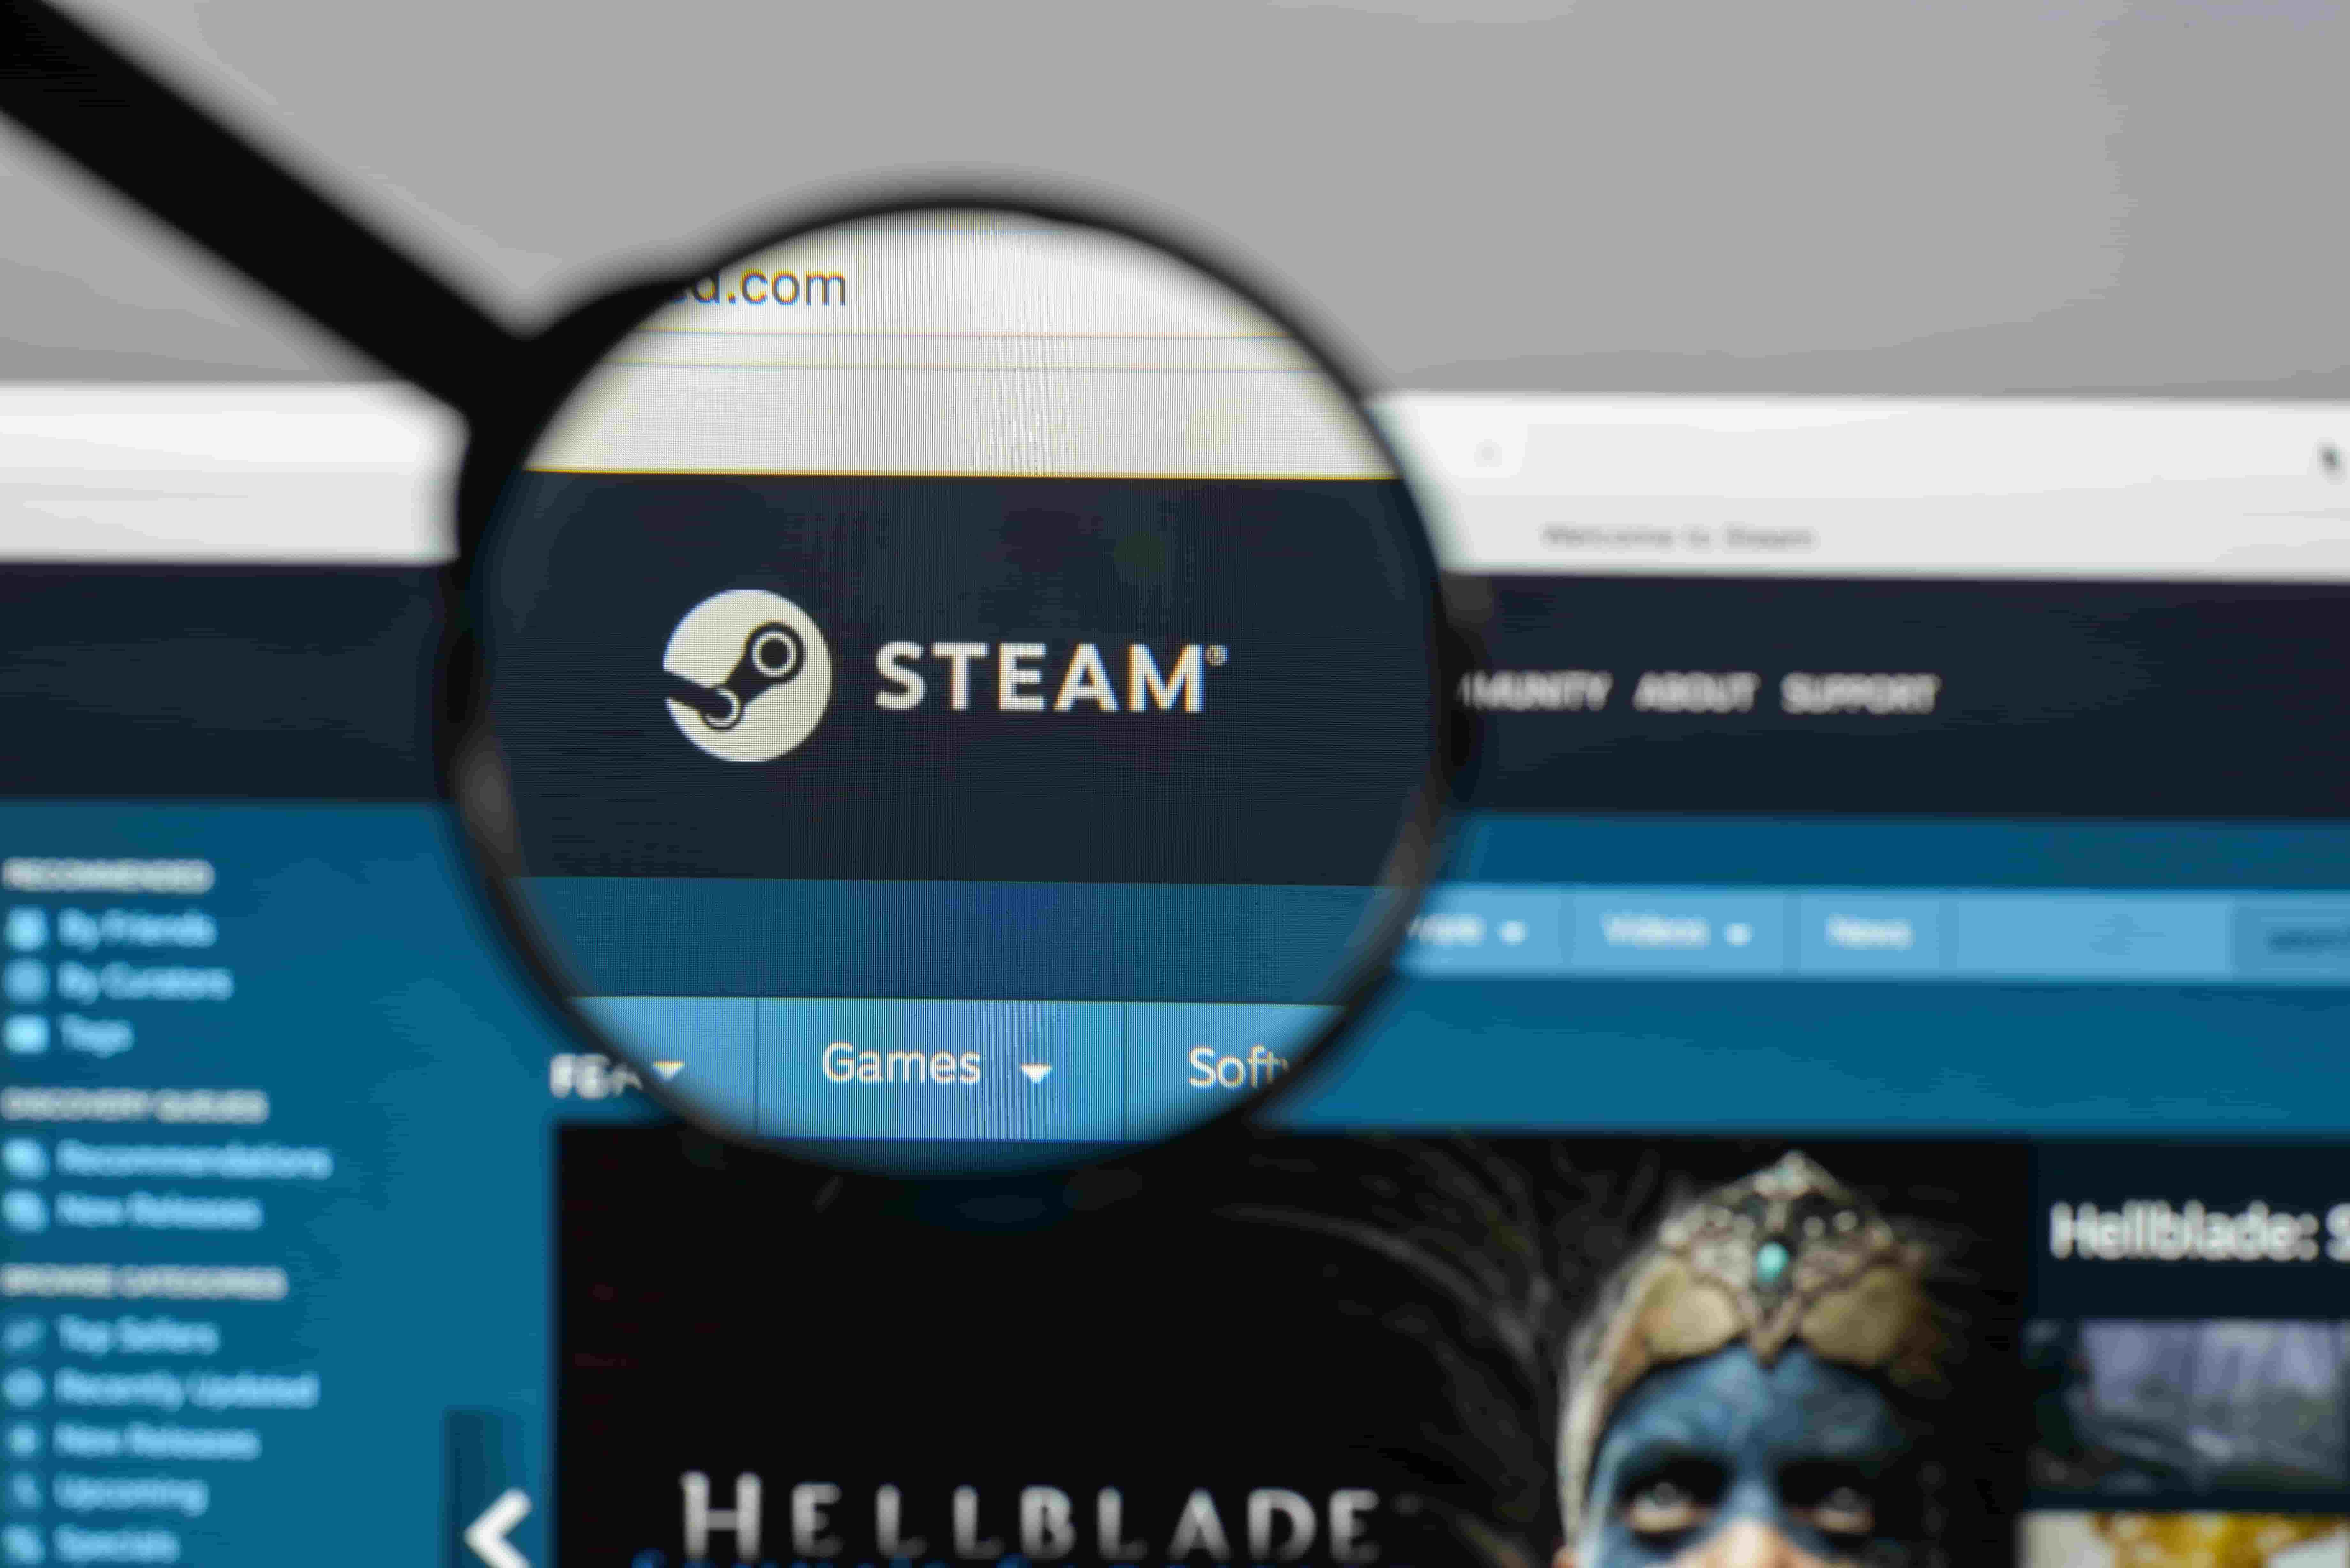 Buy Steam ID Viewer - Microsoft Store en-ET